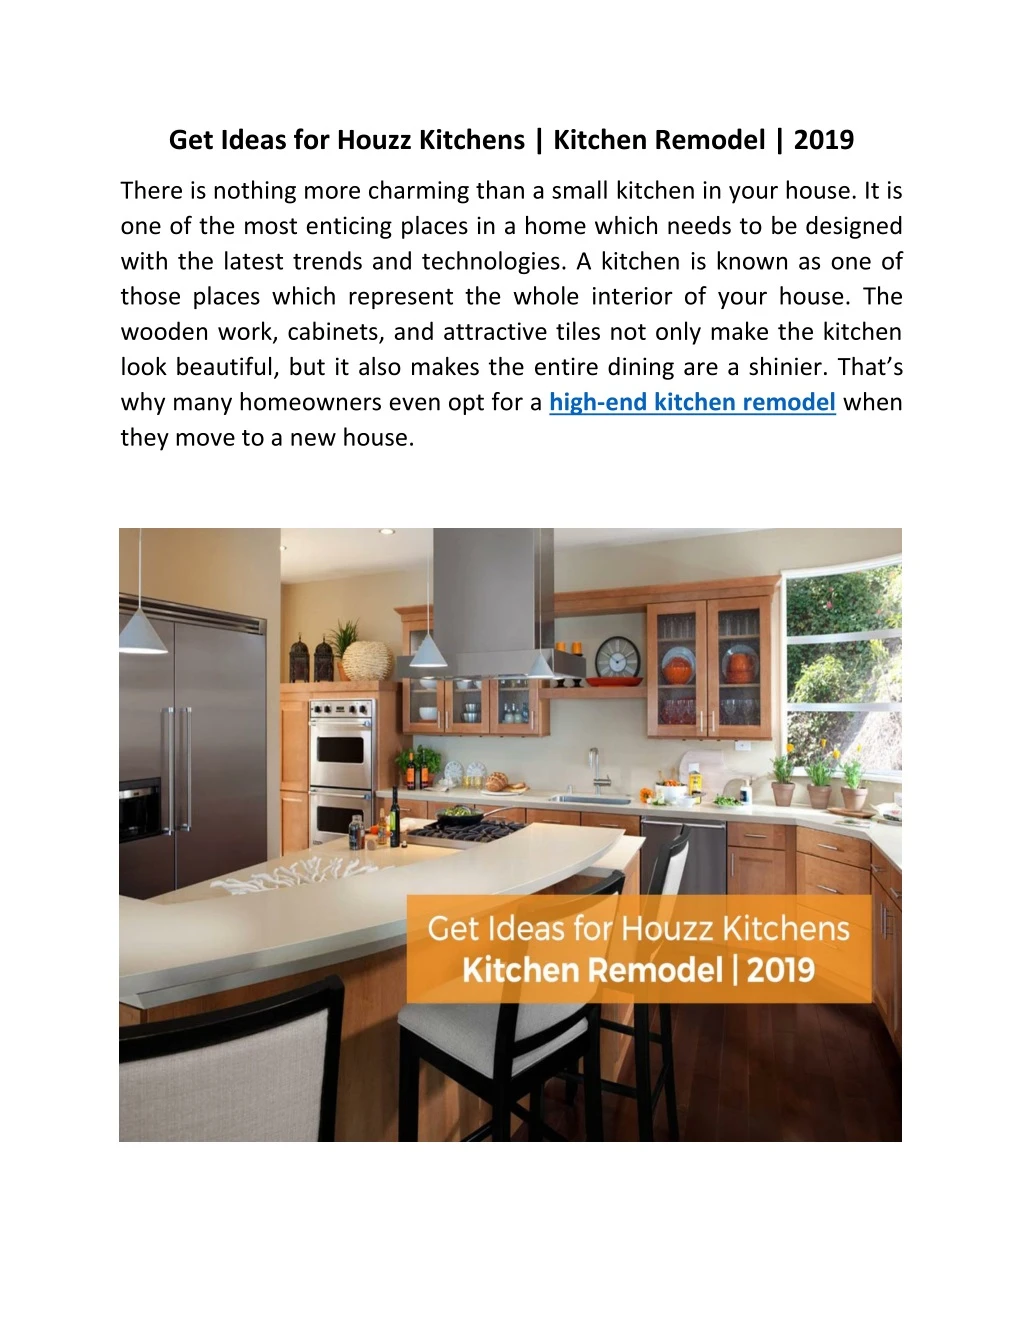 get ideas for houzz kitchens kitchen remodel 2019